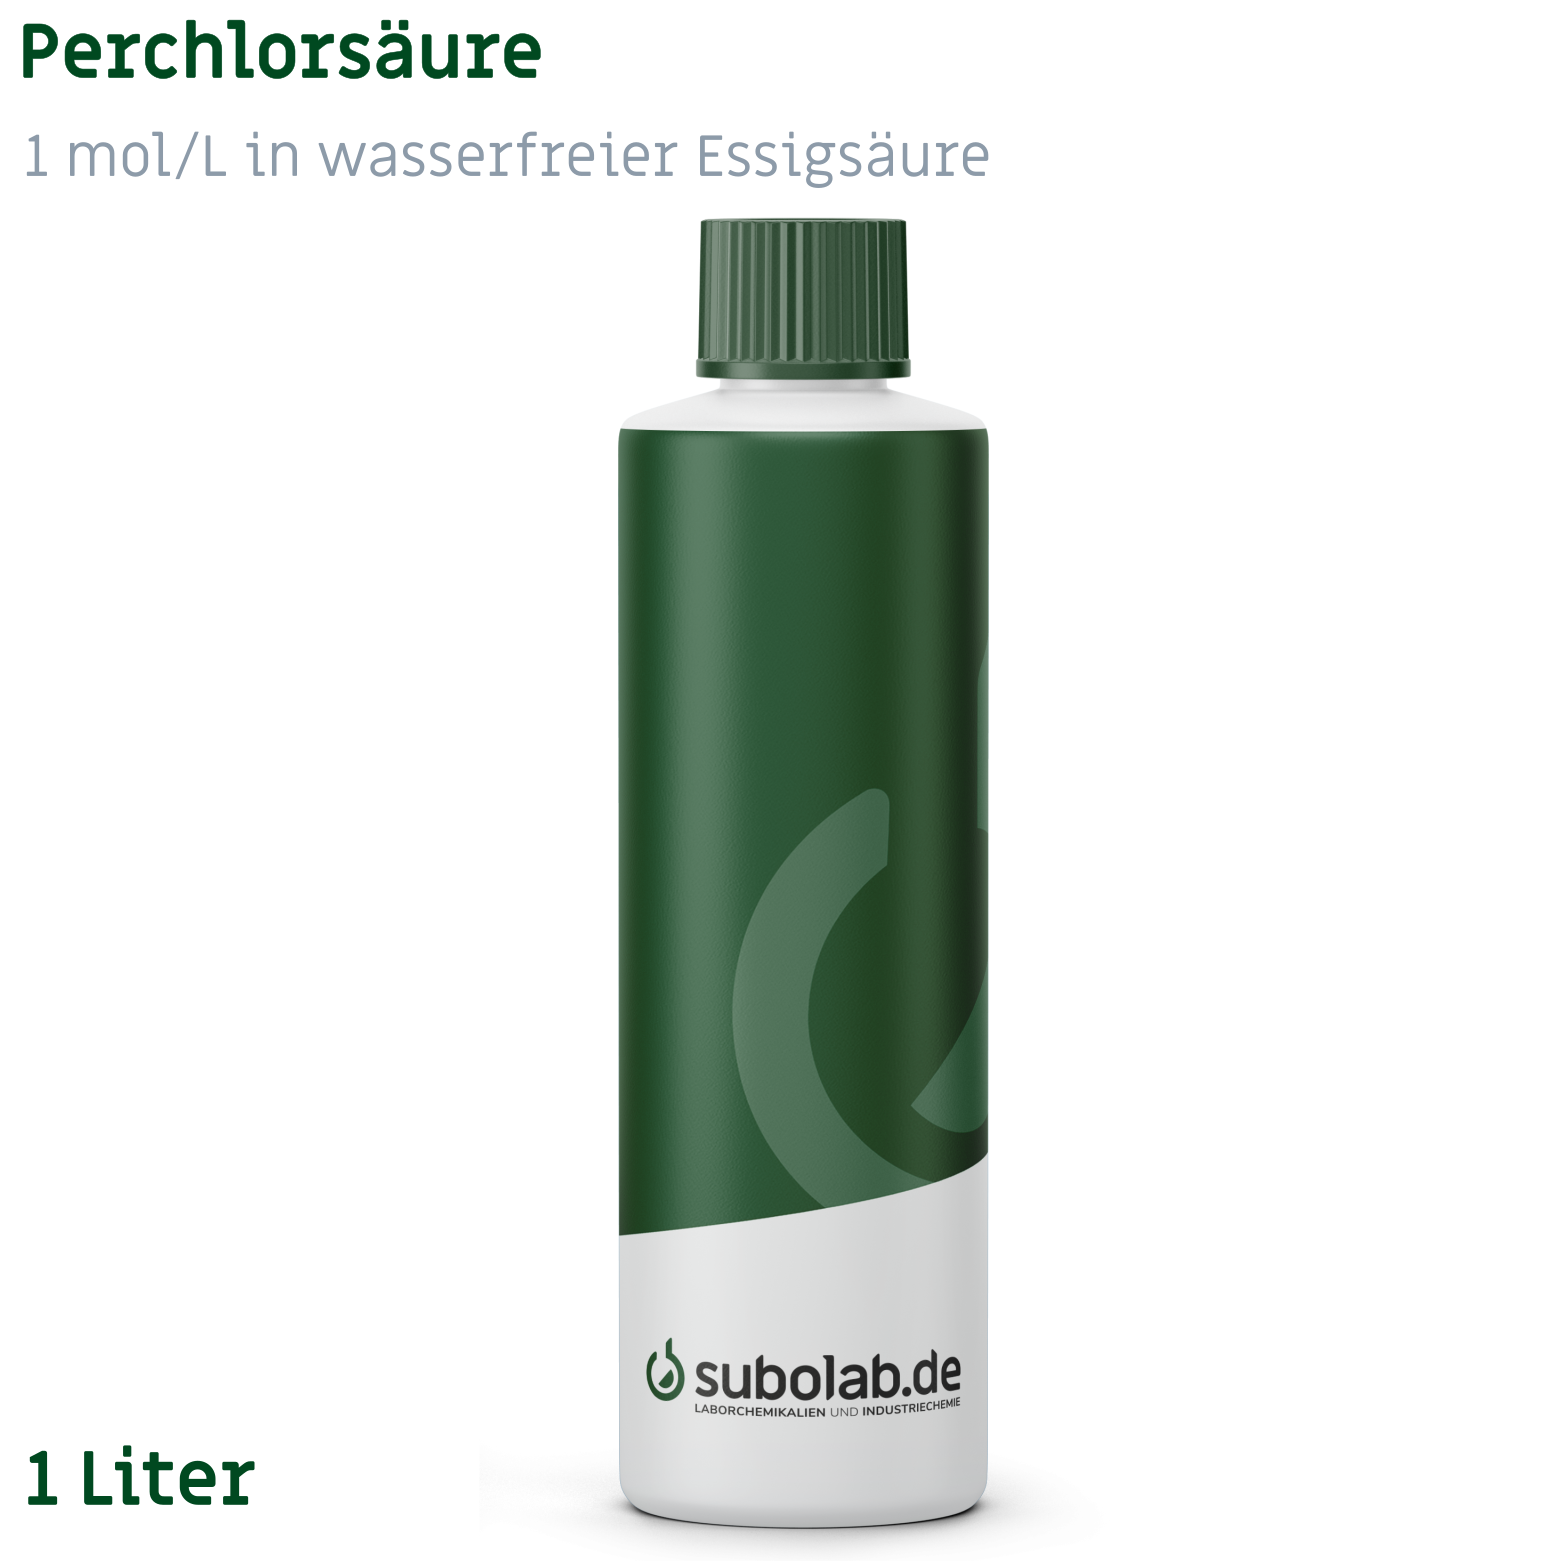 Bild von Perchlorsäure 1 mol/L in wasserfreier Essigsäure (1 Liter)